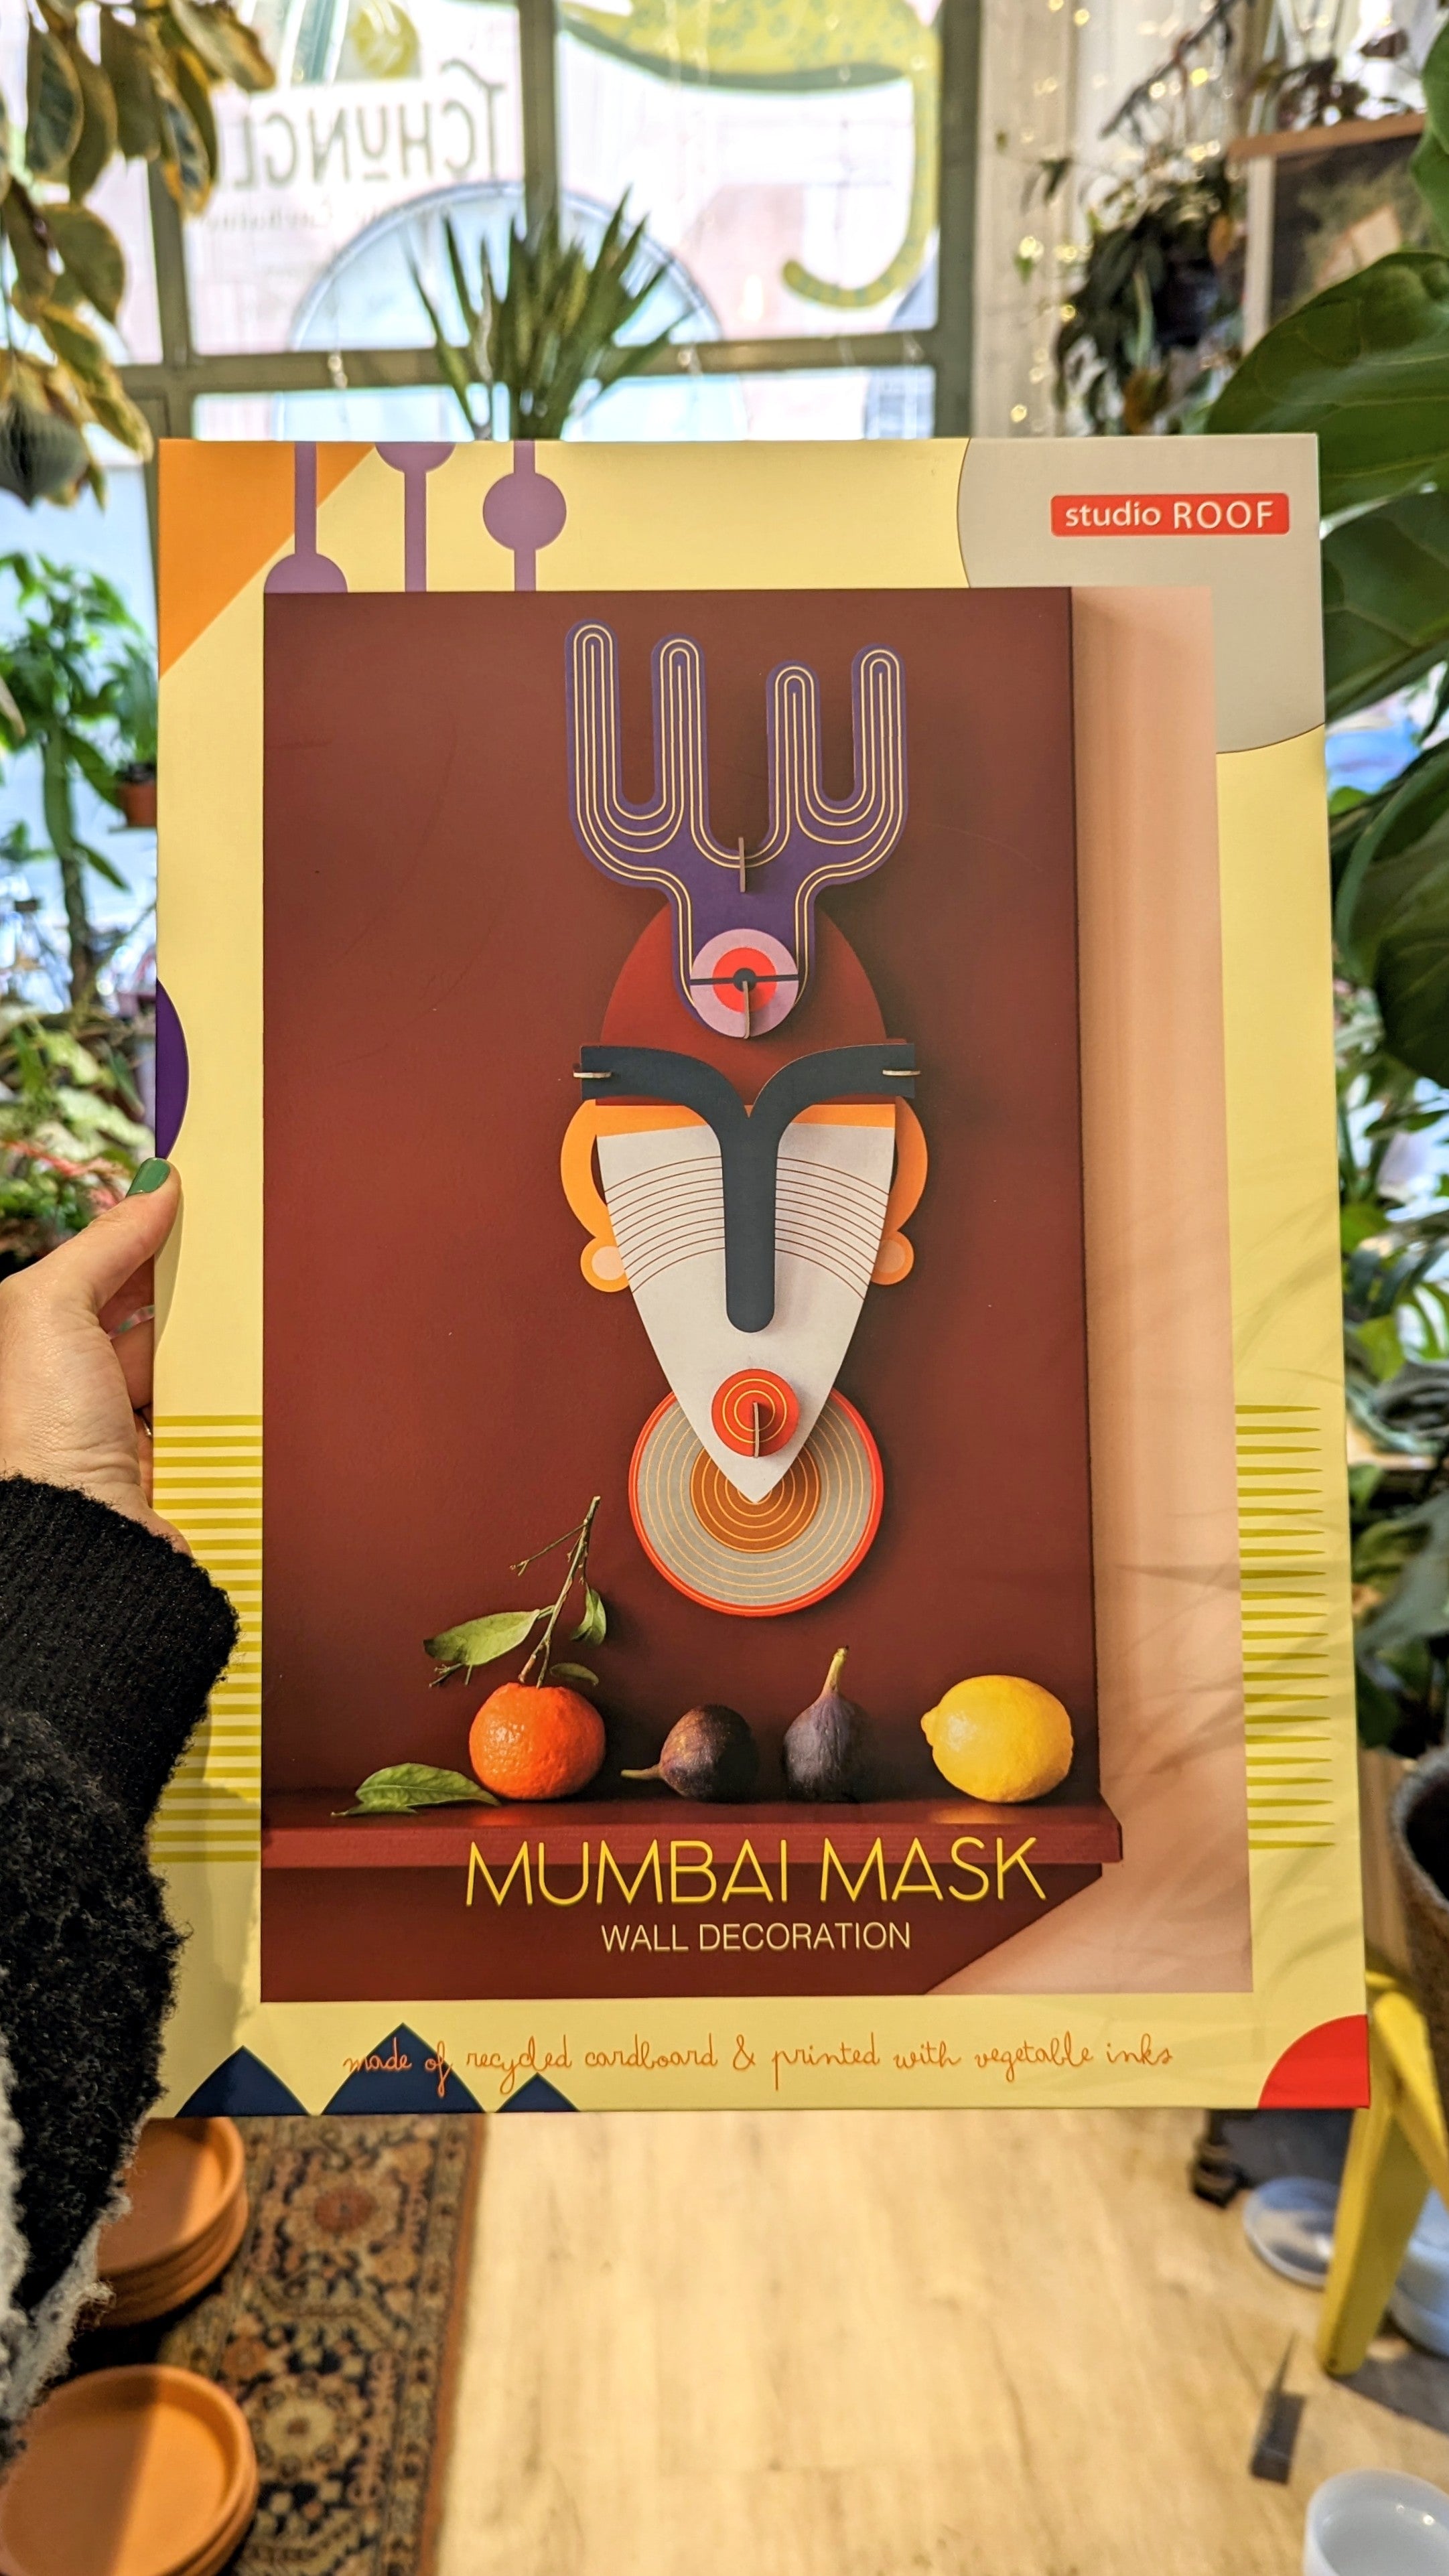 Masque Mumbai | Studio ROOF